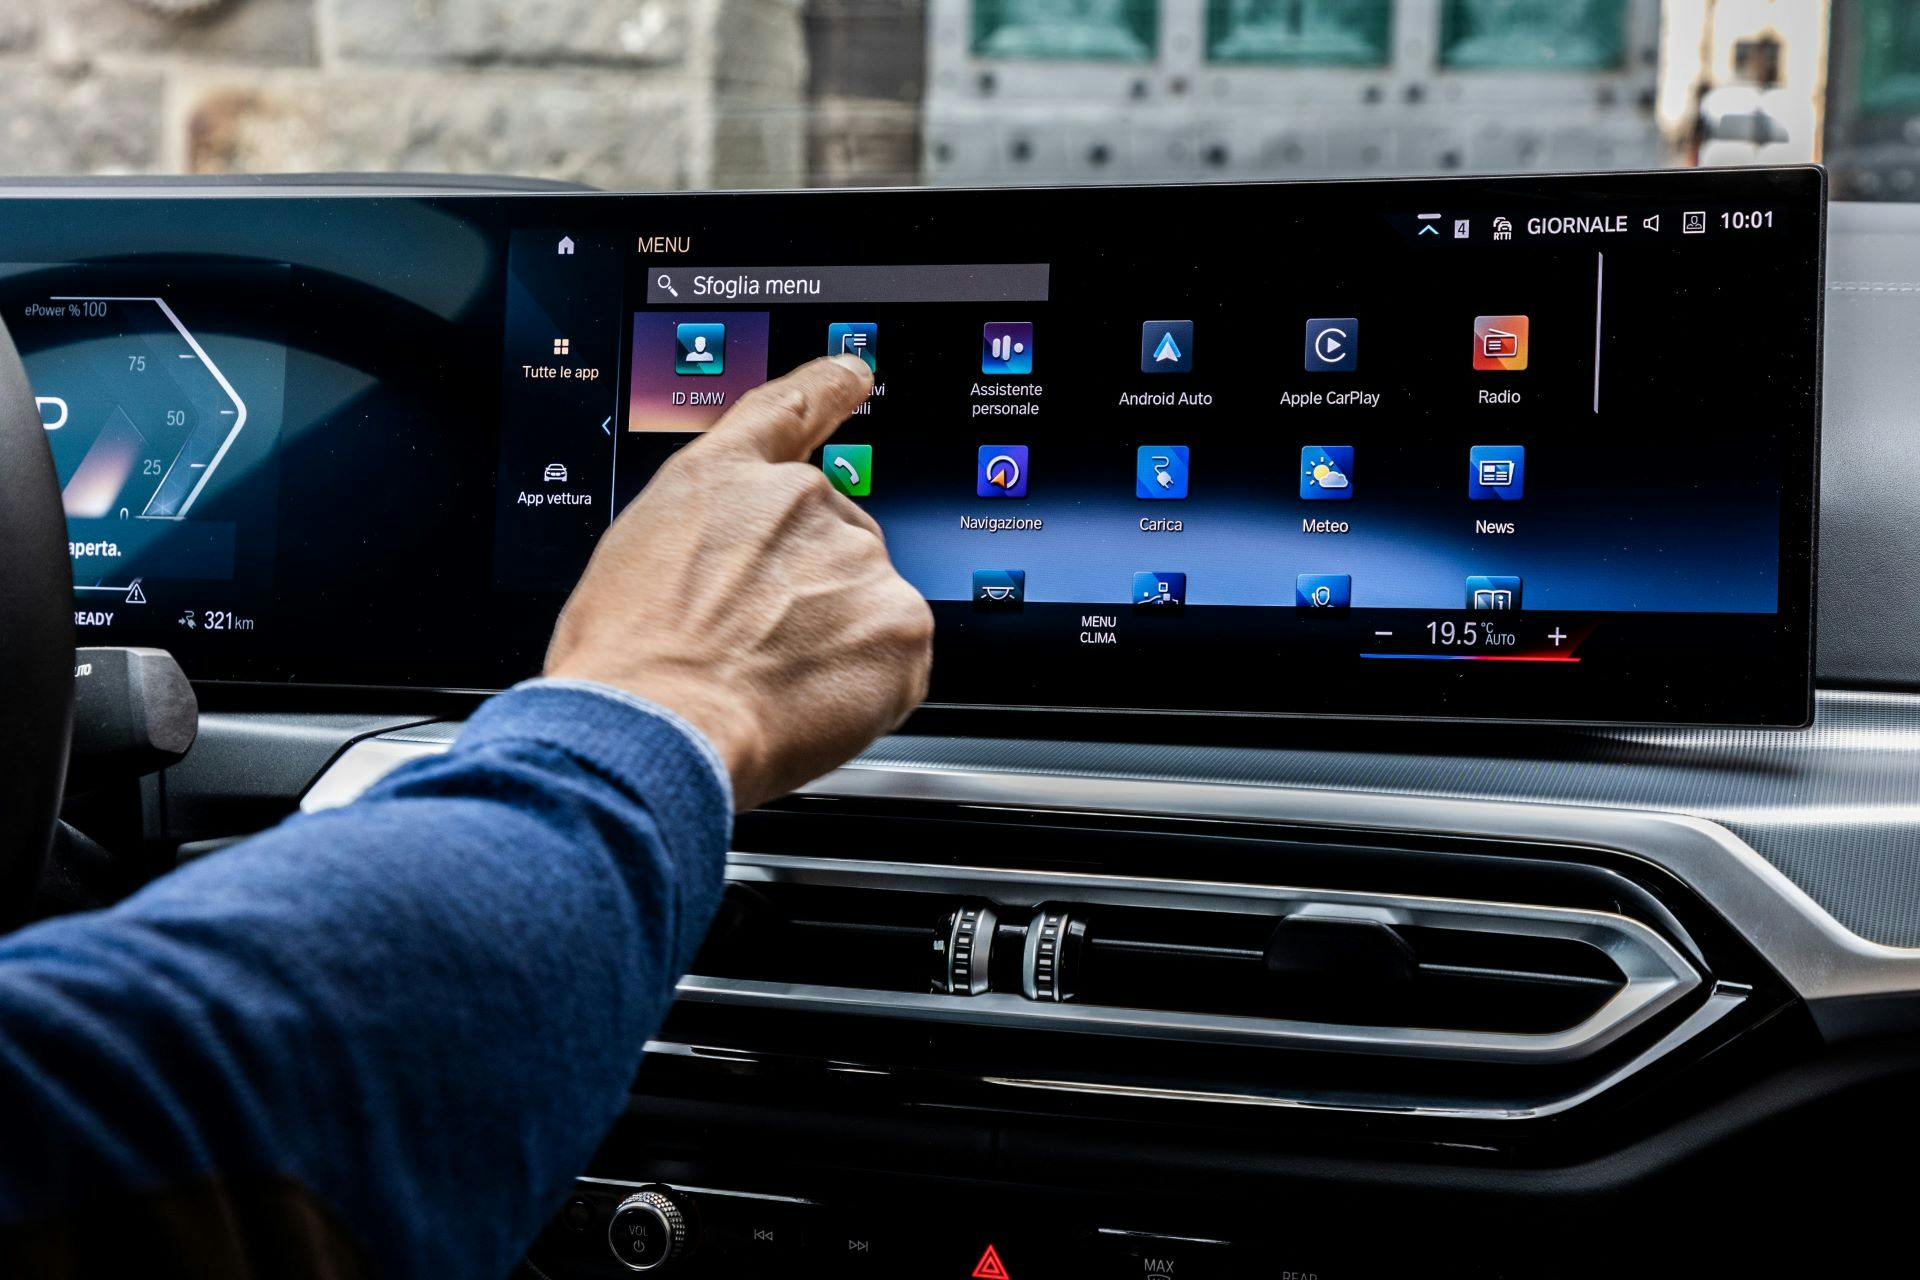 BMW i4 interni - dettaglio utilizzo schermo infotainment